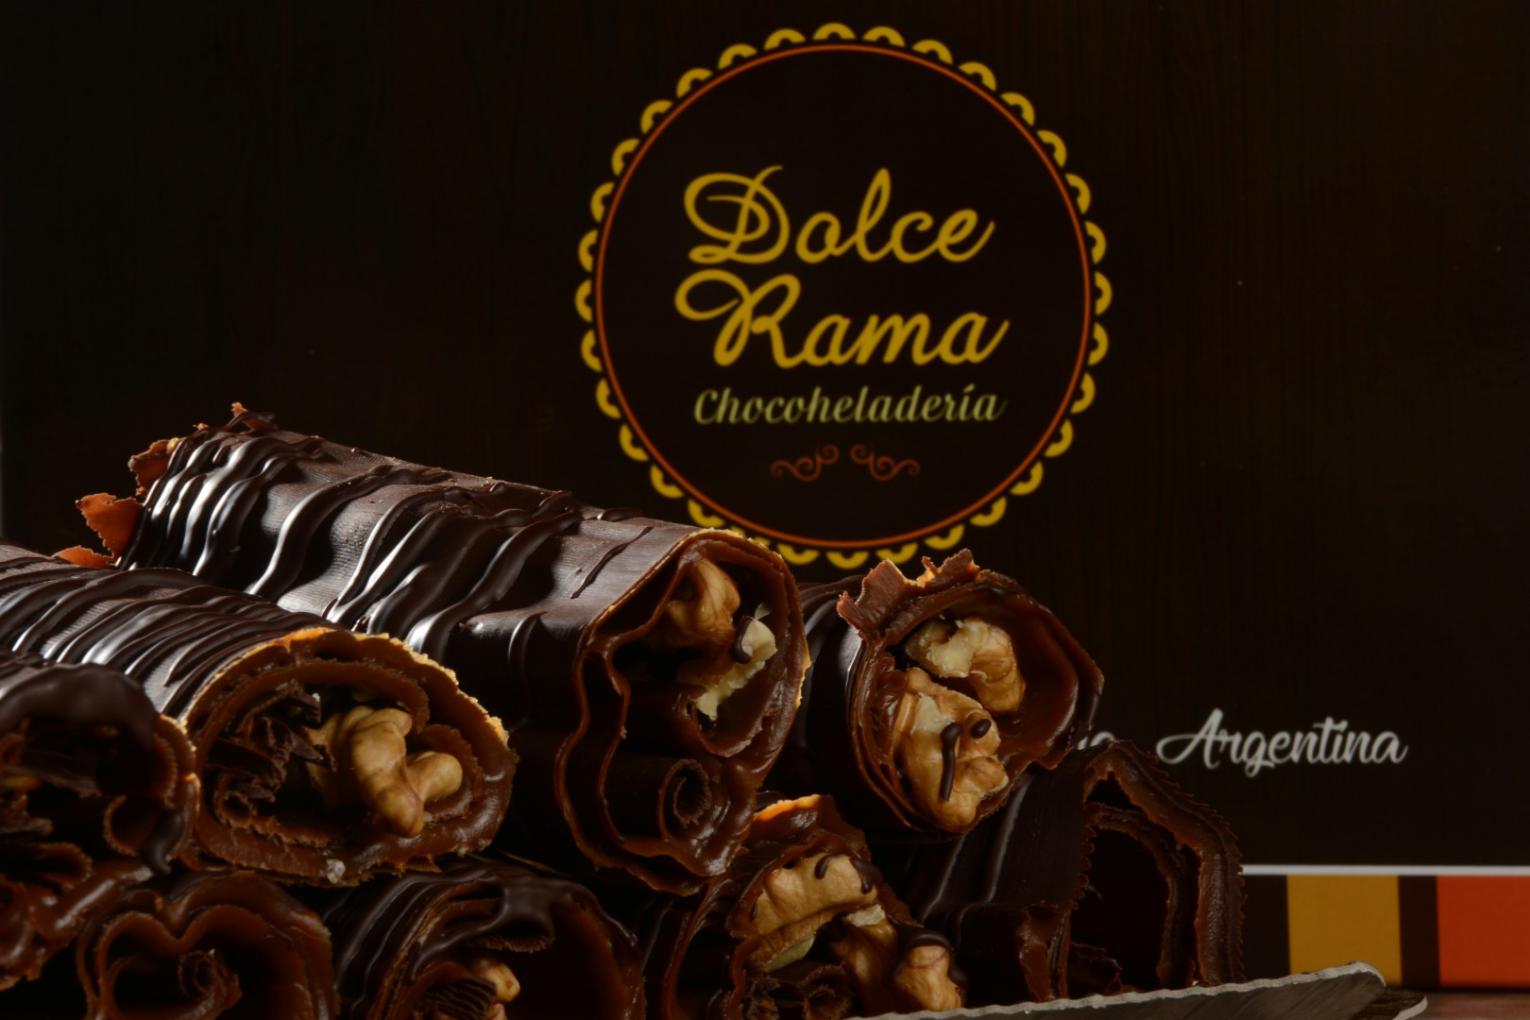 Bienvenido Dolce Rama a nuestra Gu&iacute;a Gourmet